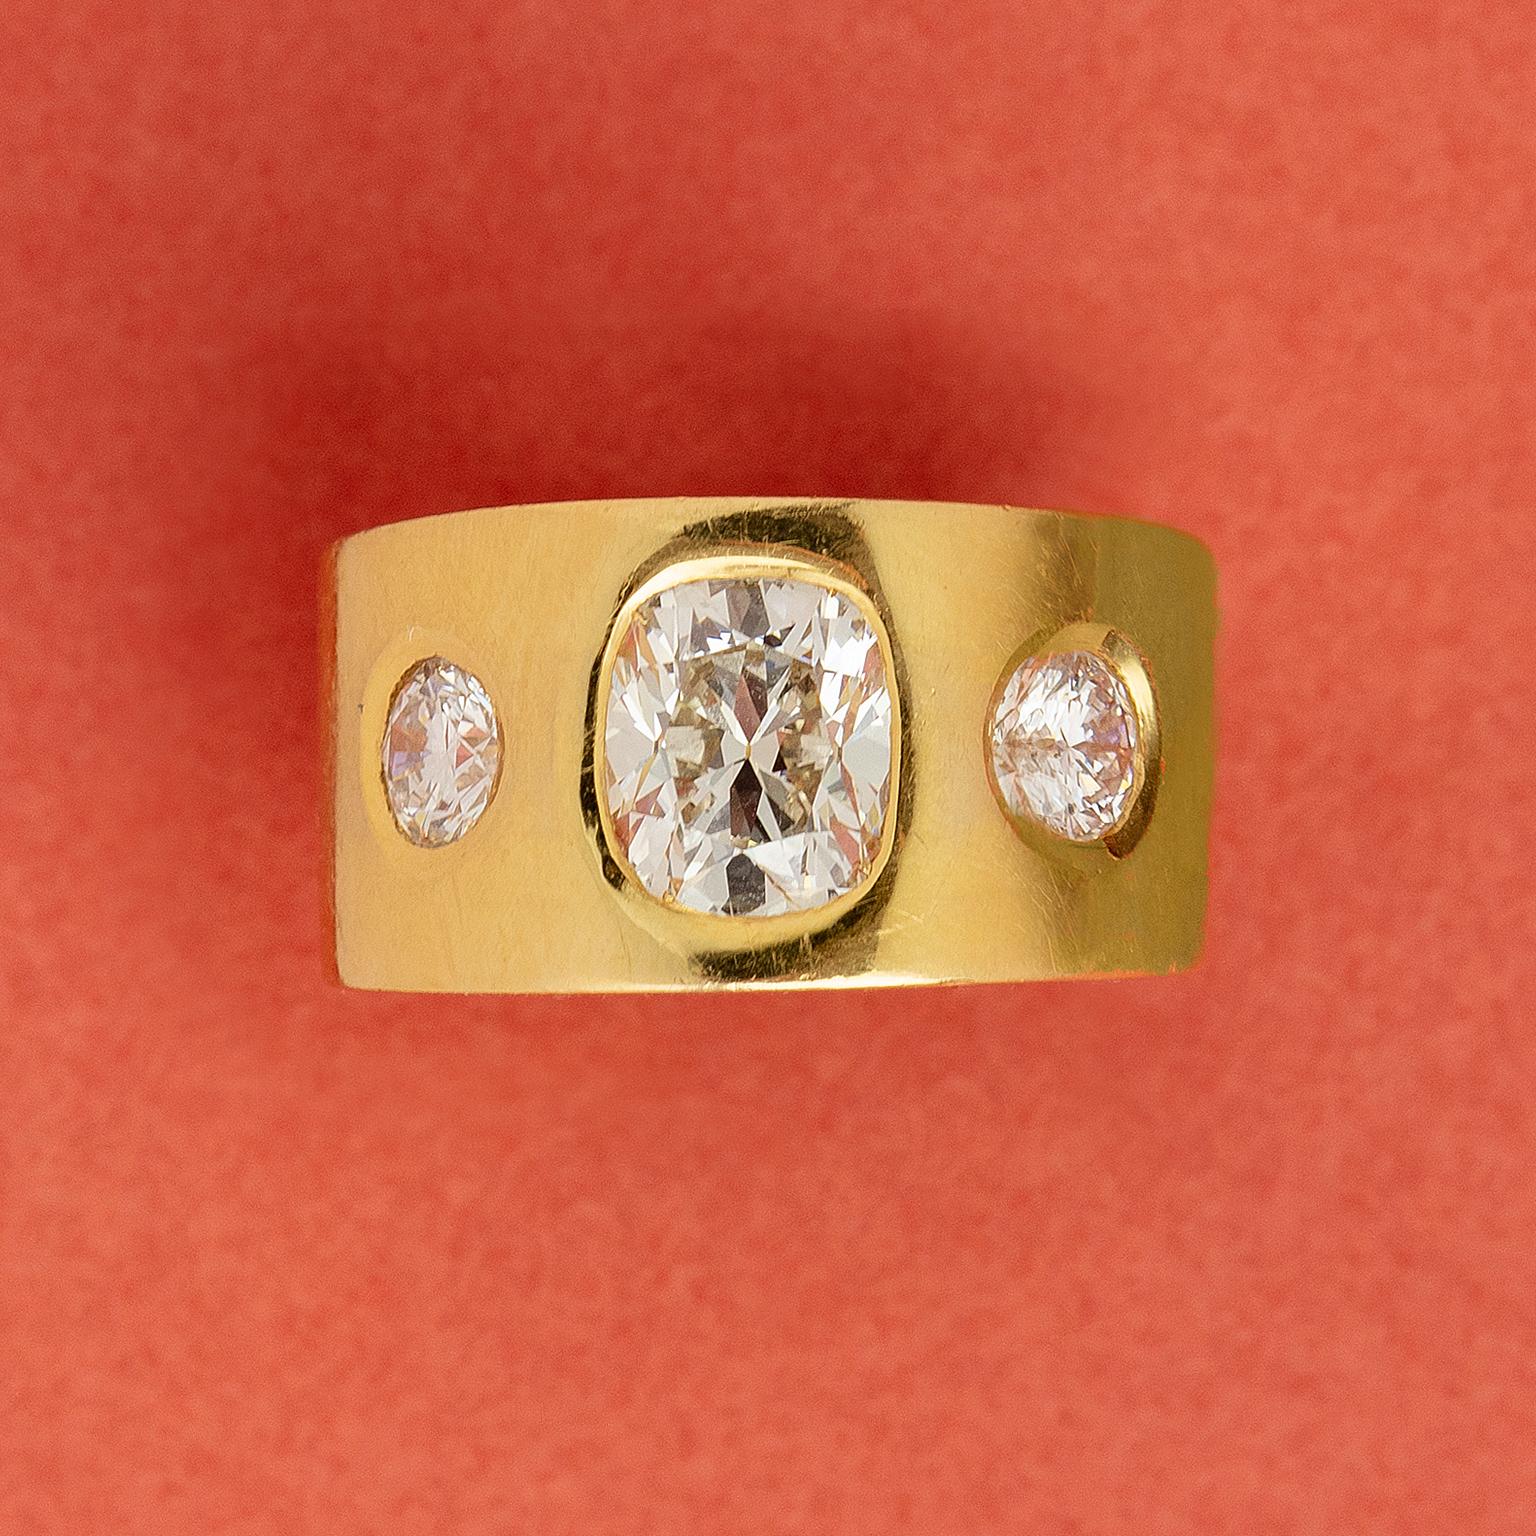 Ein Ring aus 18-karätigem Gold mit drei Steinen und scharfen Kanten, besetzt mit einem großen Diamanten im Kissenschliff (ca. 2,6 Karat, J, VS2) und zwei Diamanten im Brillantschliff (jeweils ca. 0,50 Karat, F-G, VS2-SI1), alle in einer bündigen